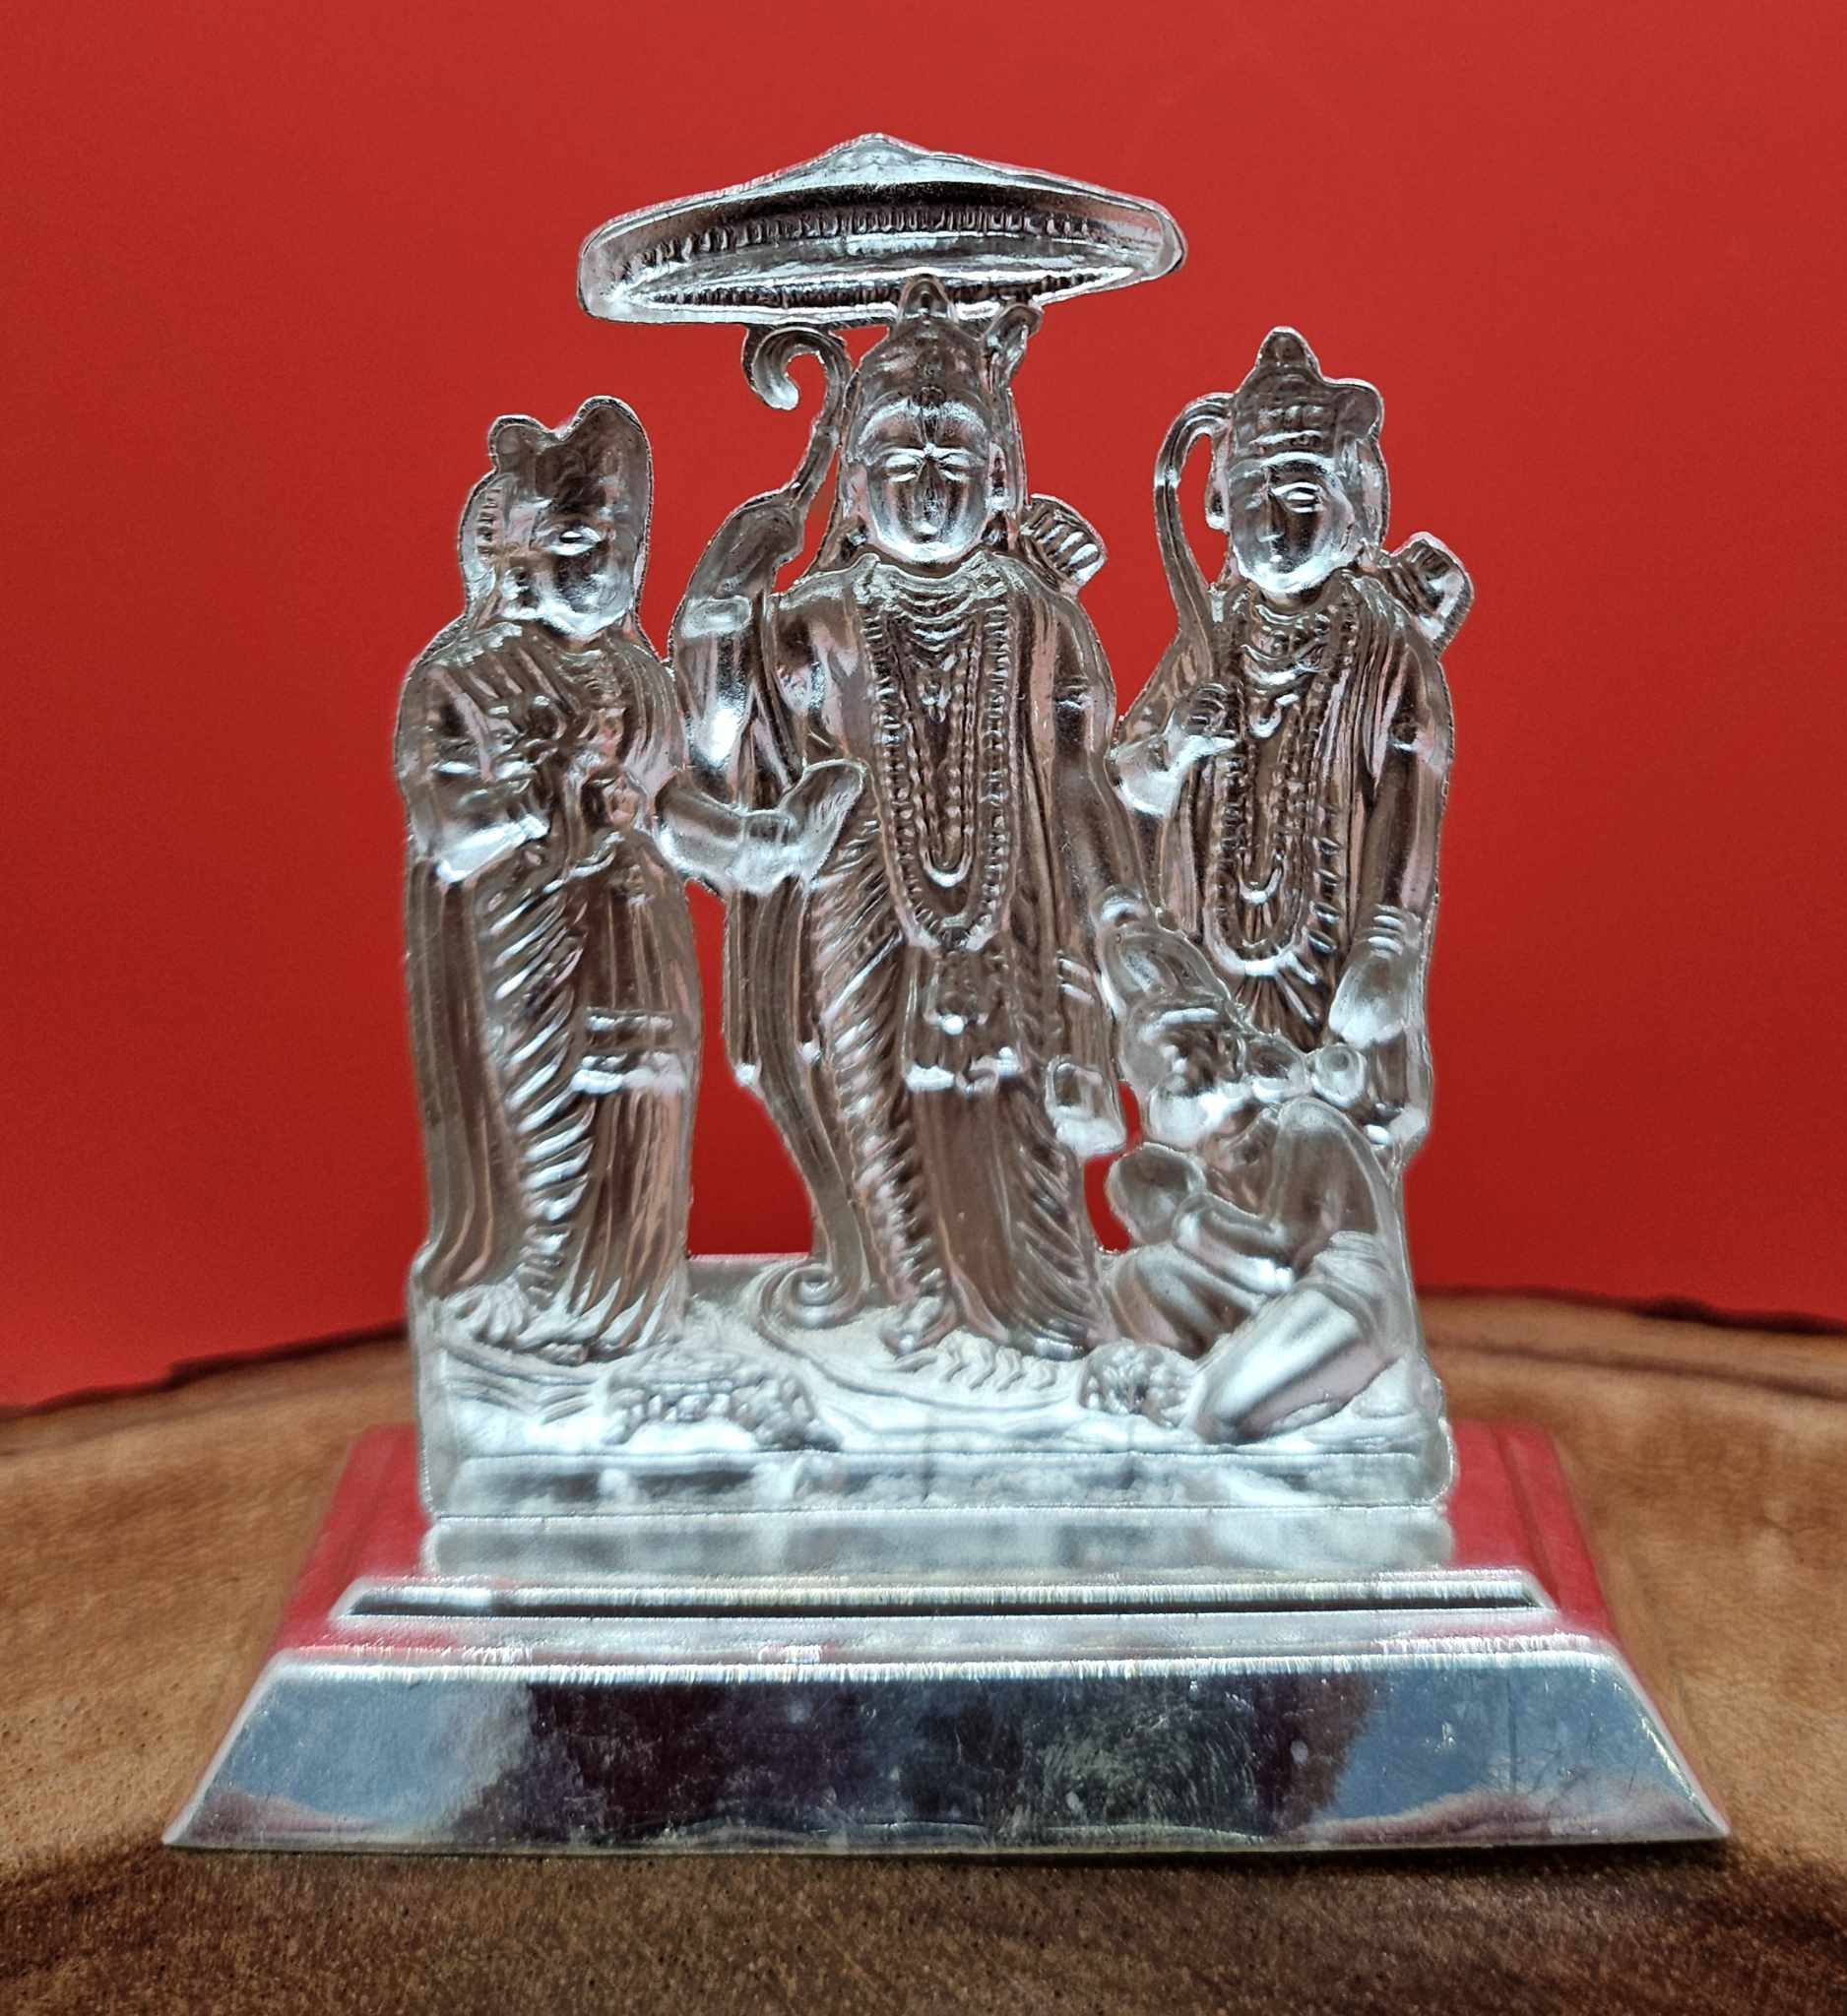 3" Pure Silver Idol of Shri Ram Durbar, Lard Rama  27g, SLD# 1270